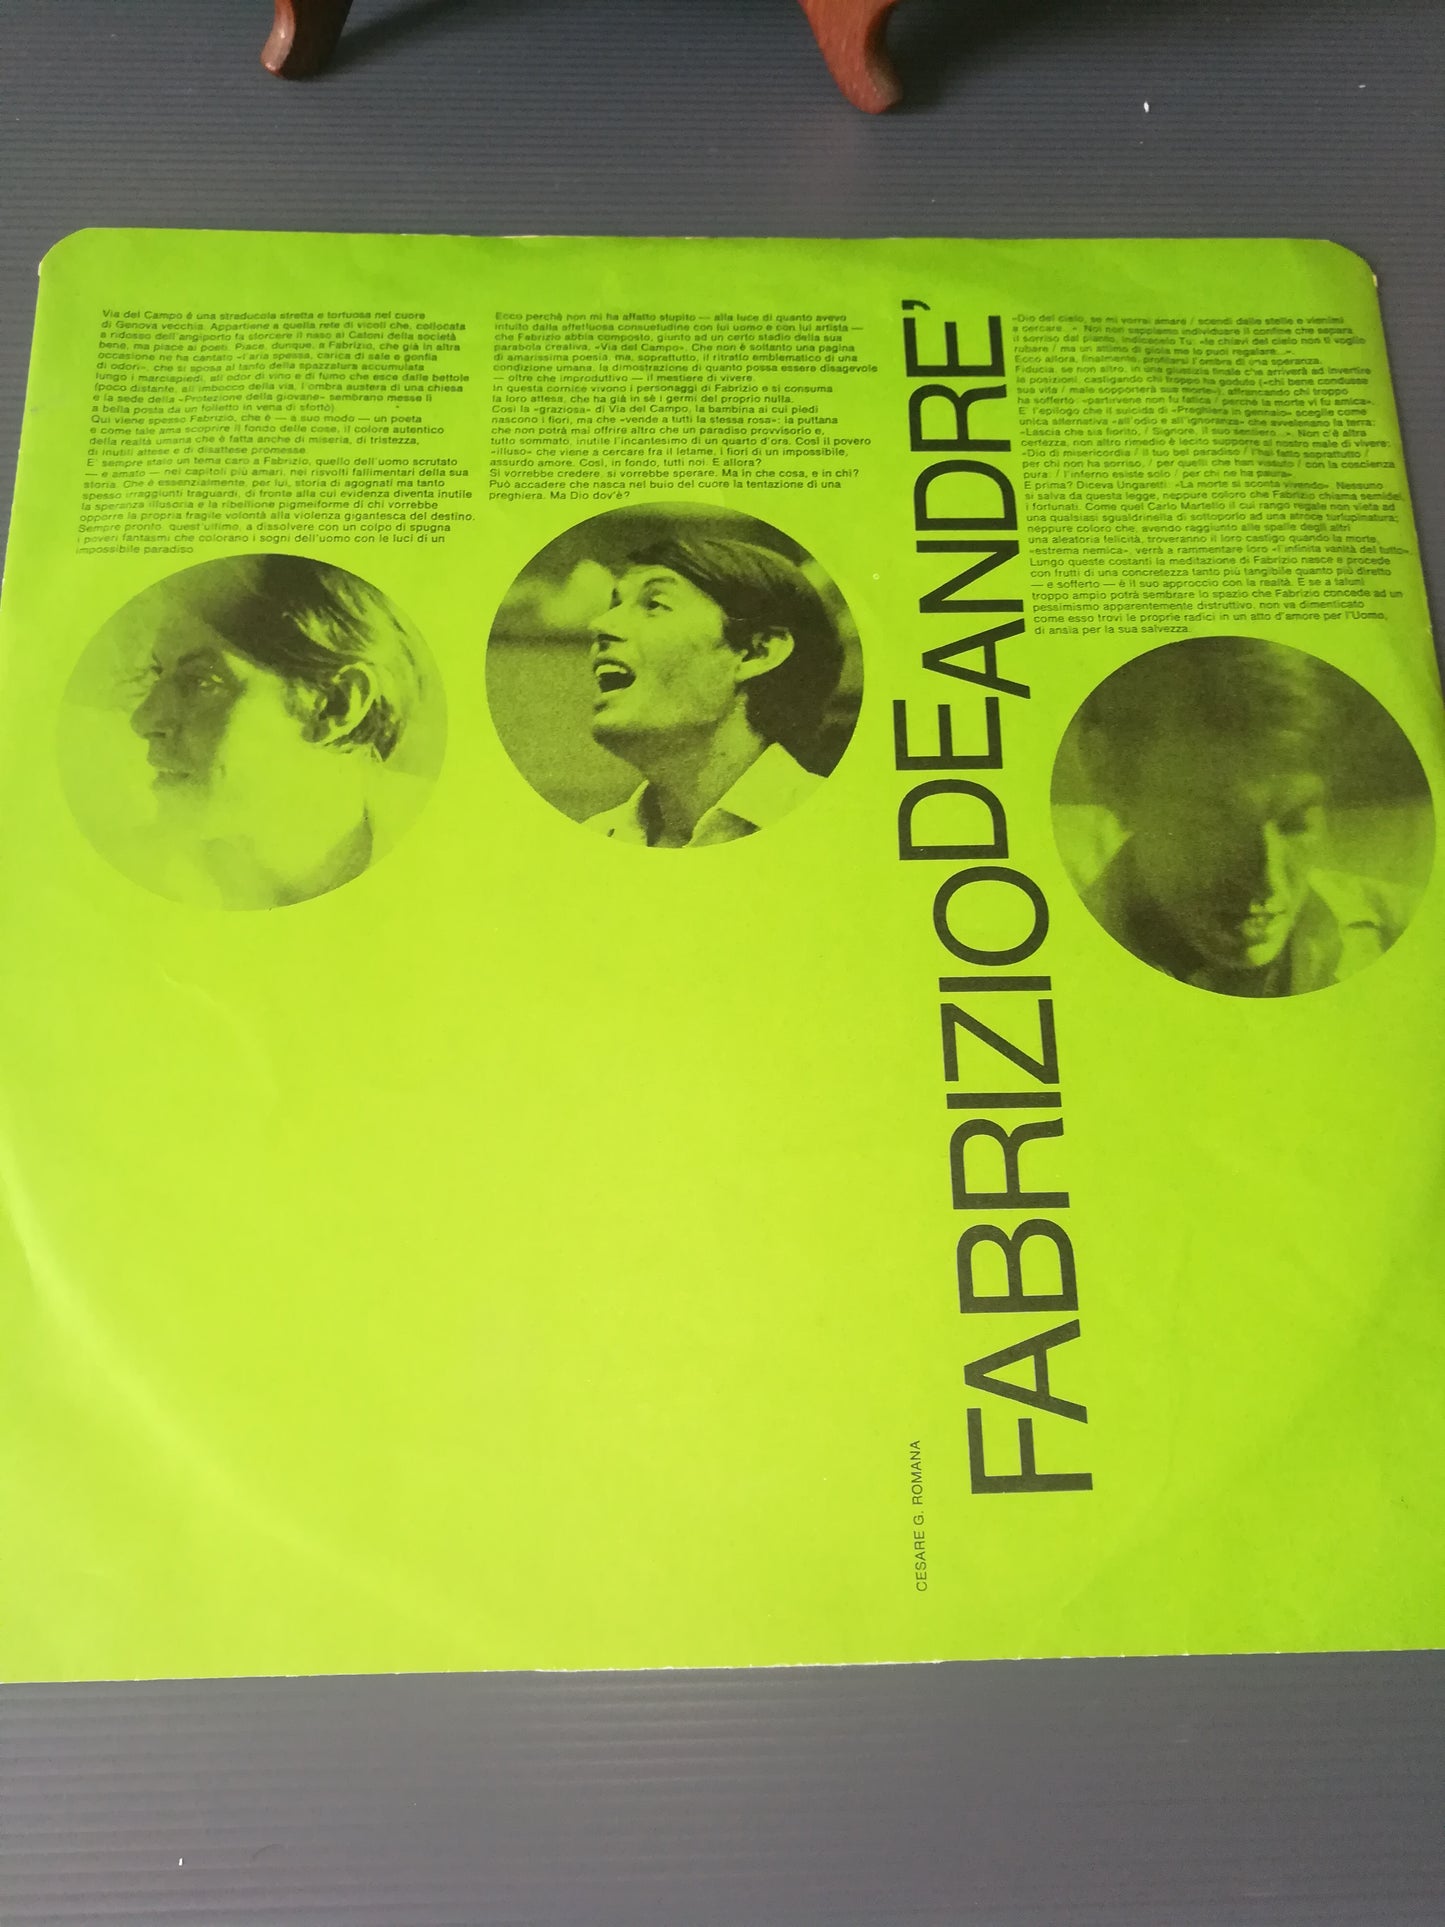 "Fabrizio De Andrè vol.1" LP 33 rpm Bluebell